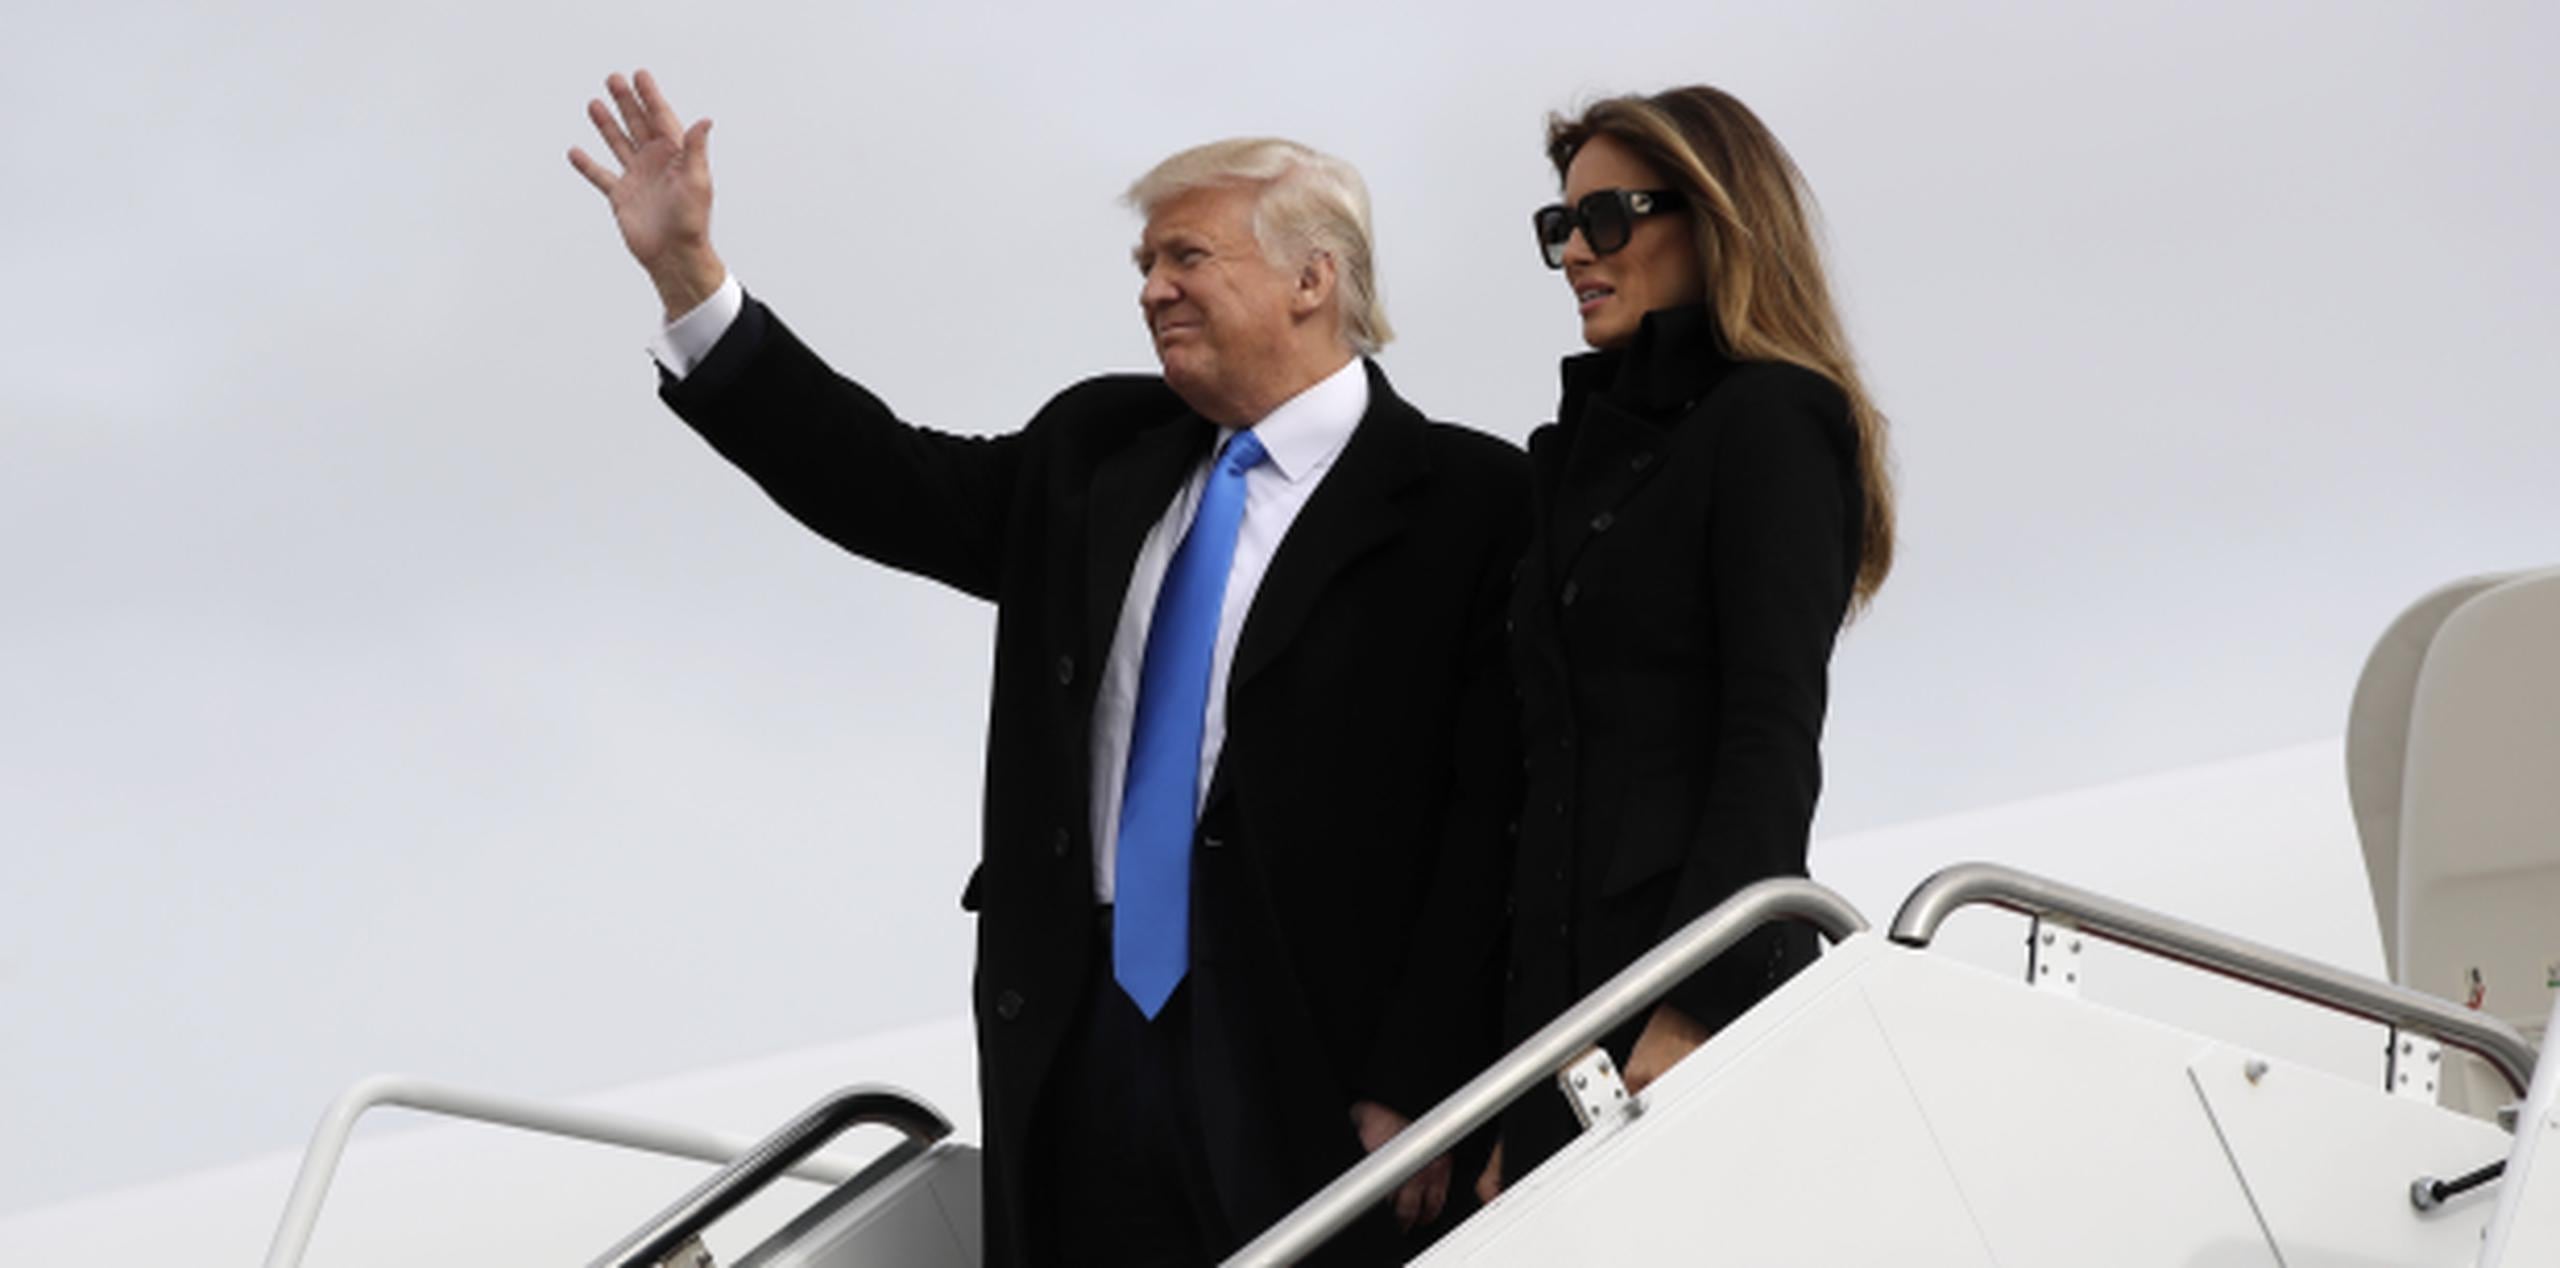 Acompañado de su esposa Melania, el presidente electo saluda tras salir del avión militar que lo llevó hoy a Washington D.C. (AP)